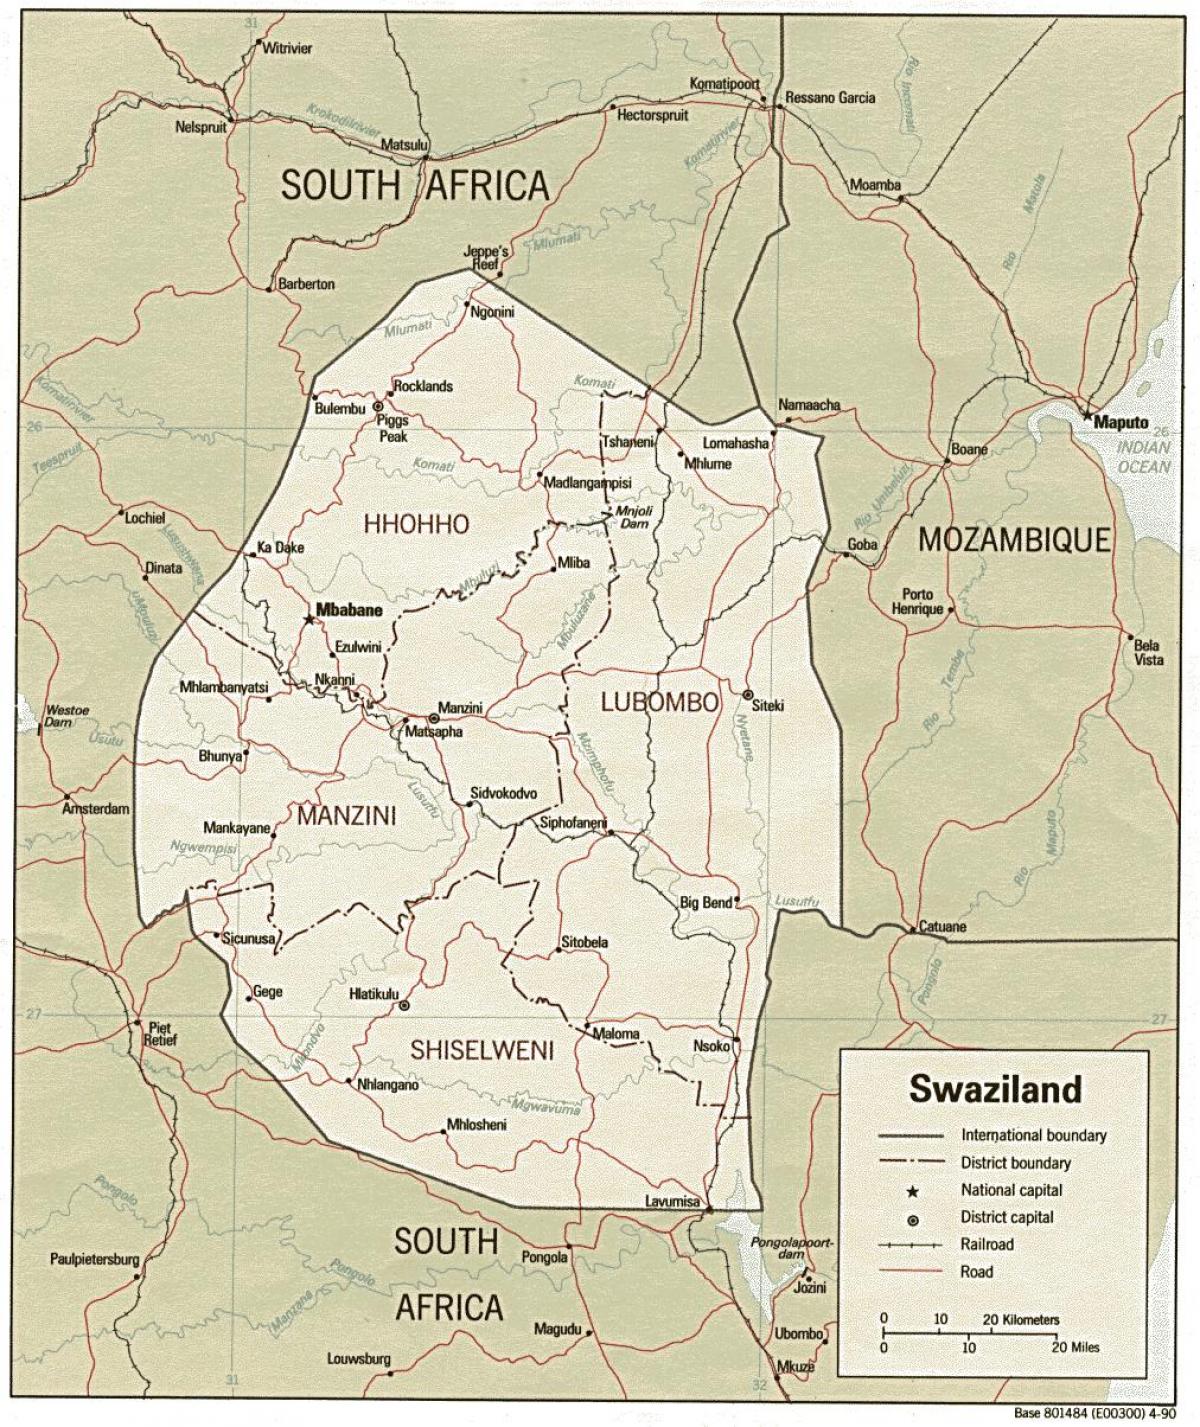 mappa di Swaziland mostrando posti di frontiera